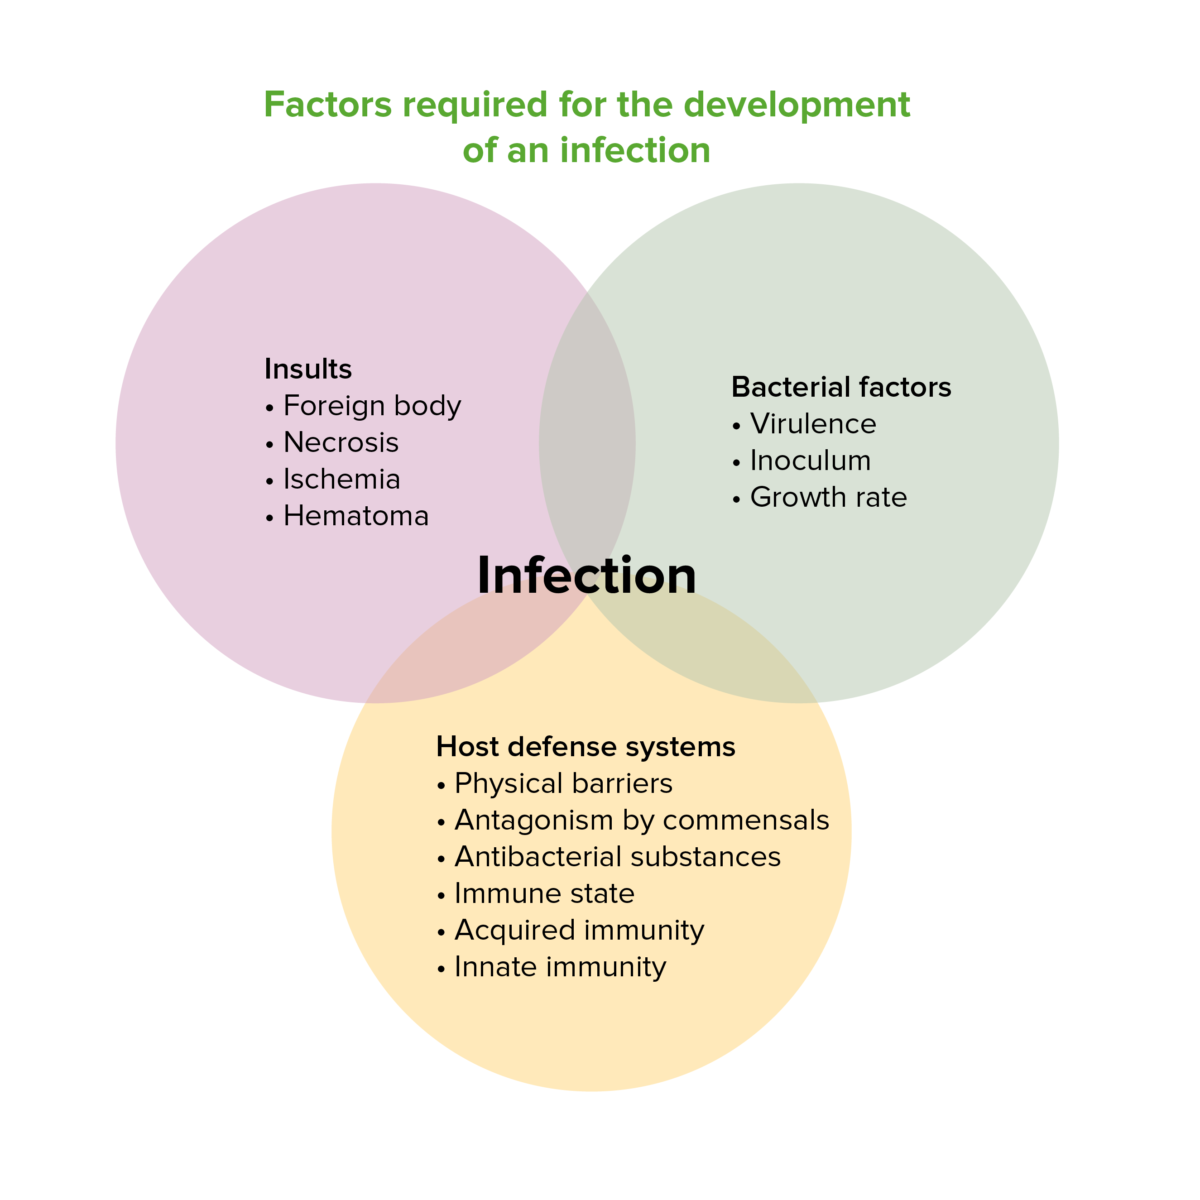 Factores necesarios para el desarrollo de una infección